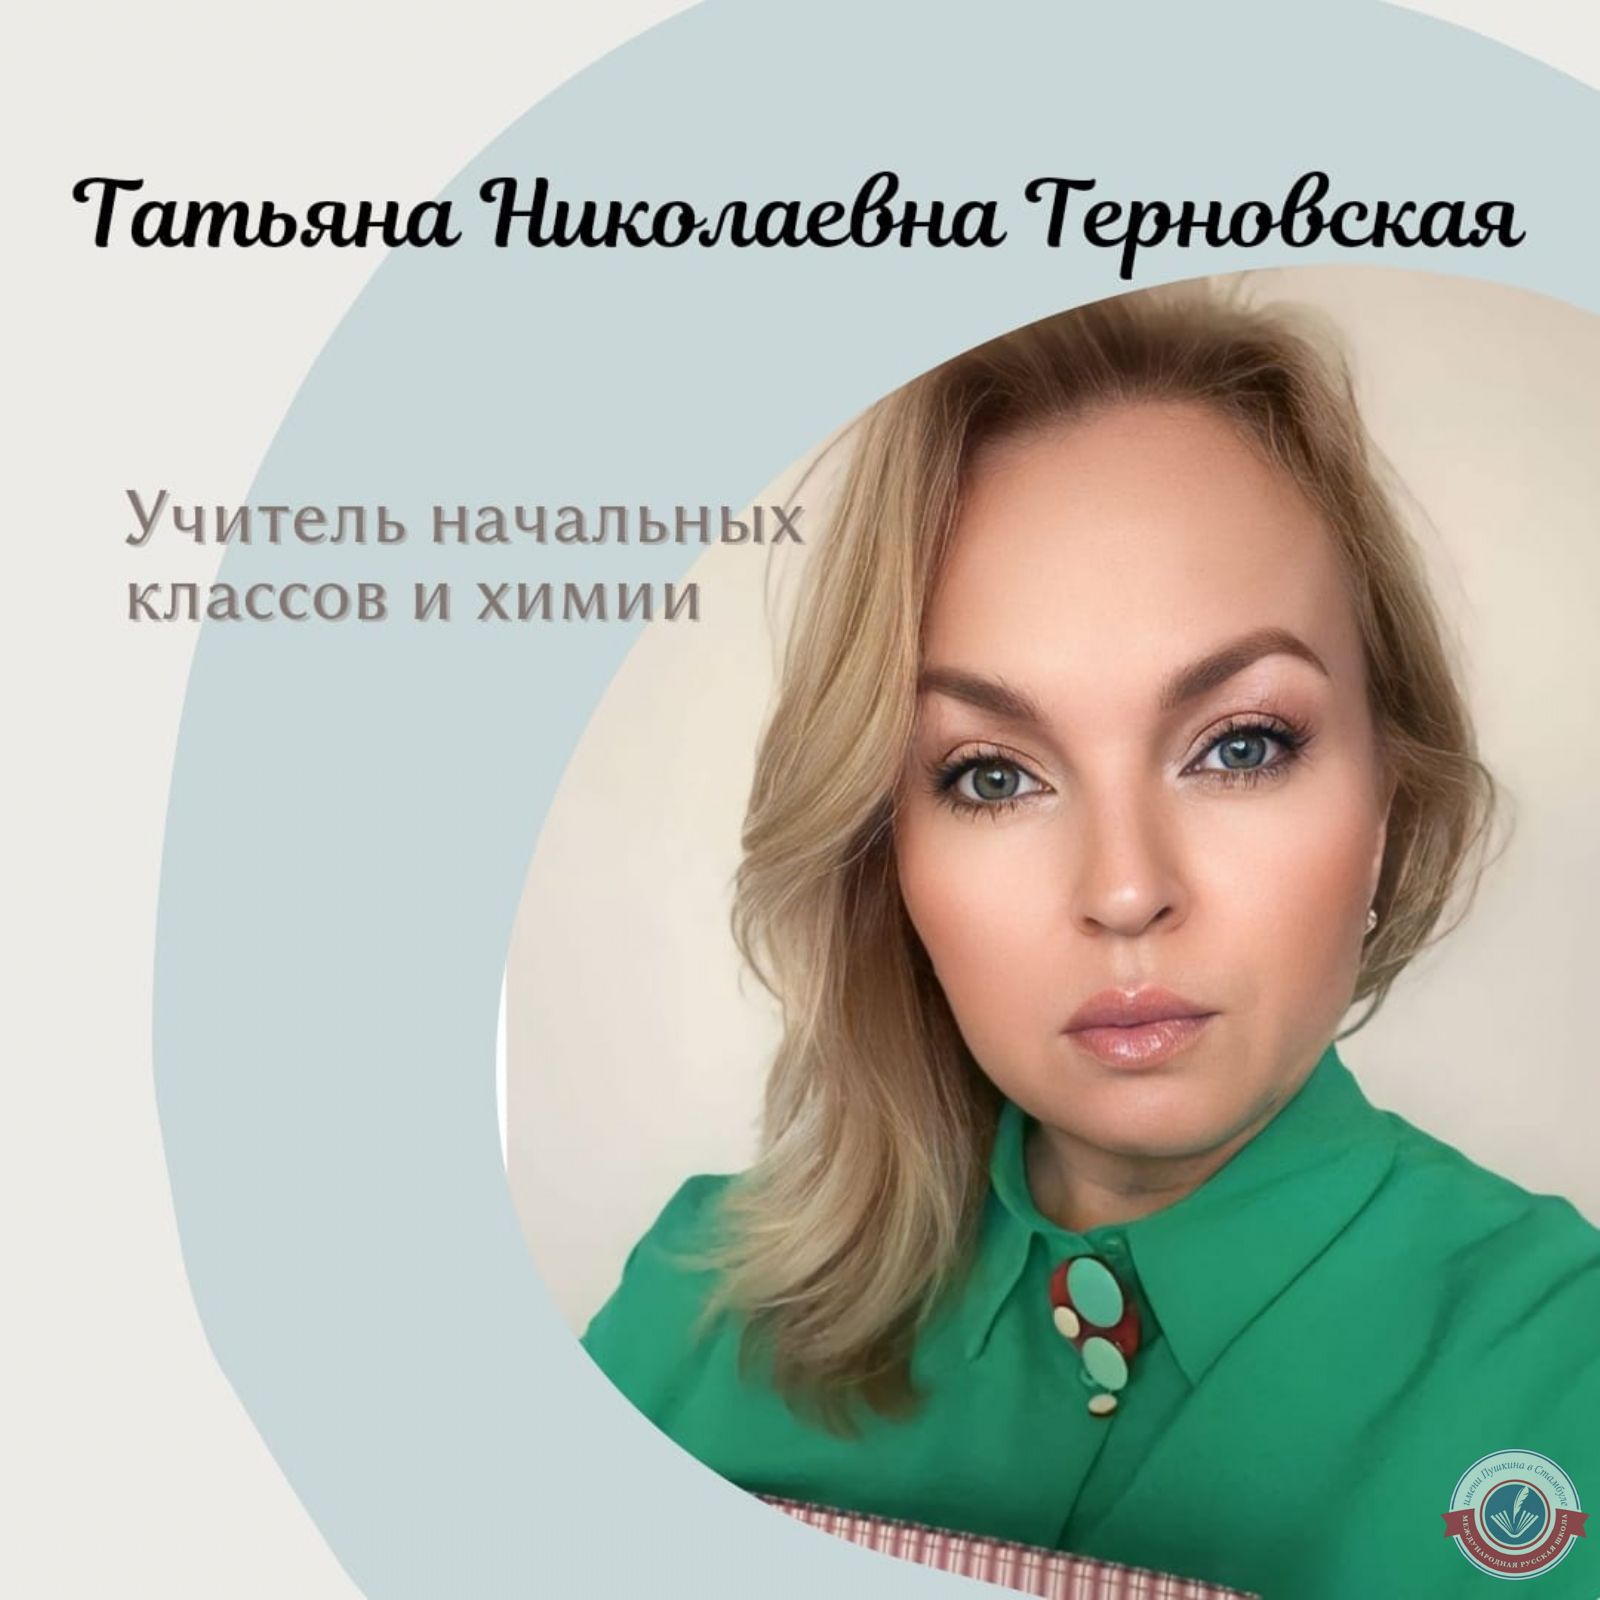 Татьяна Николаевна Терновская